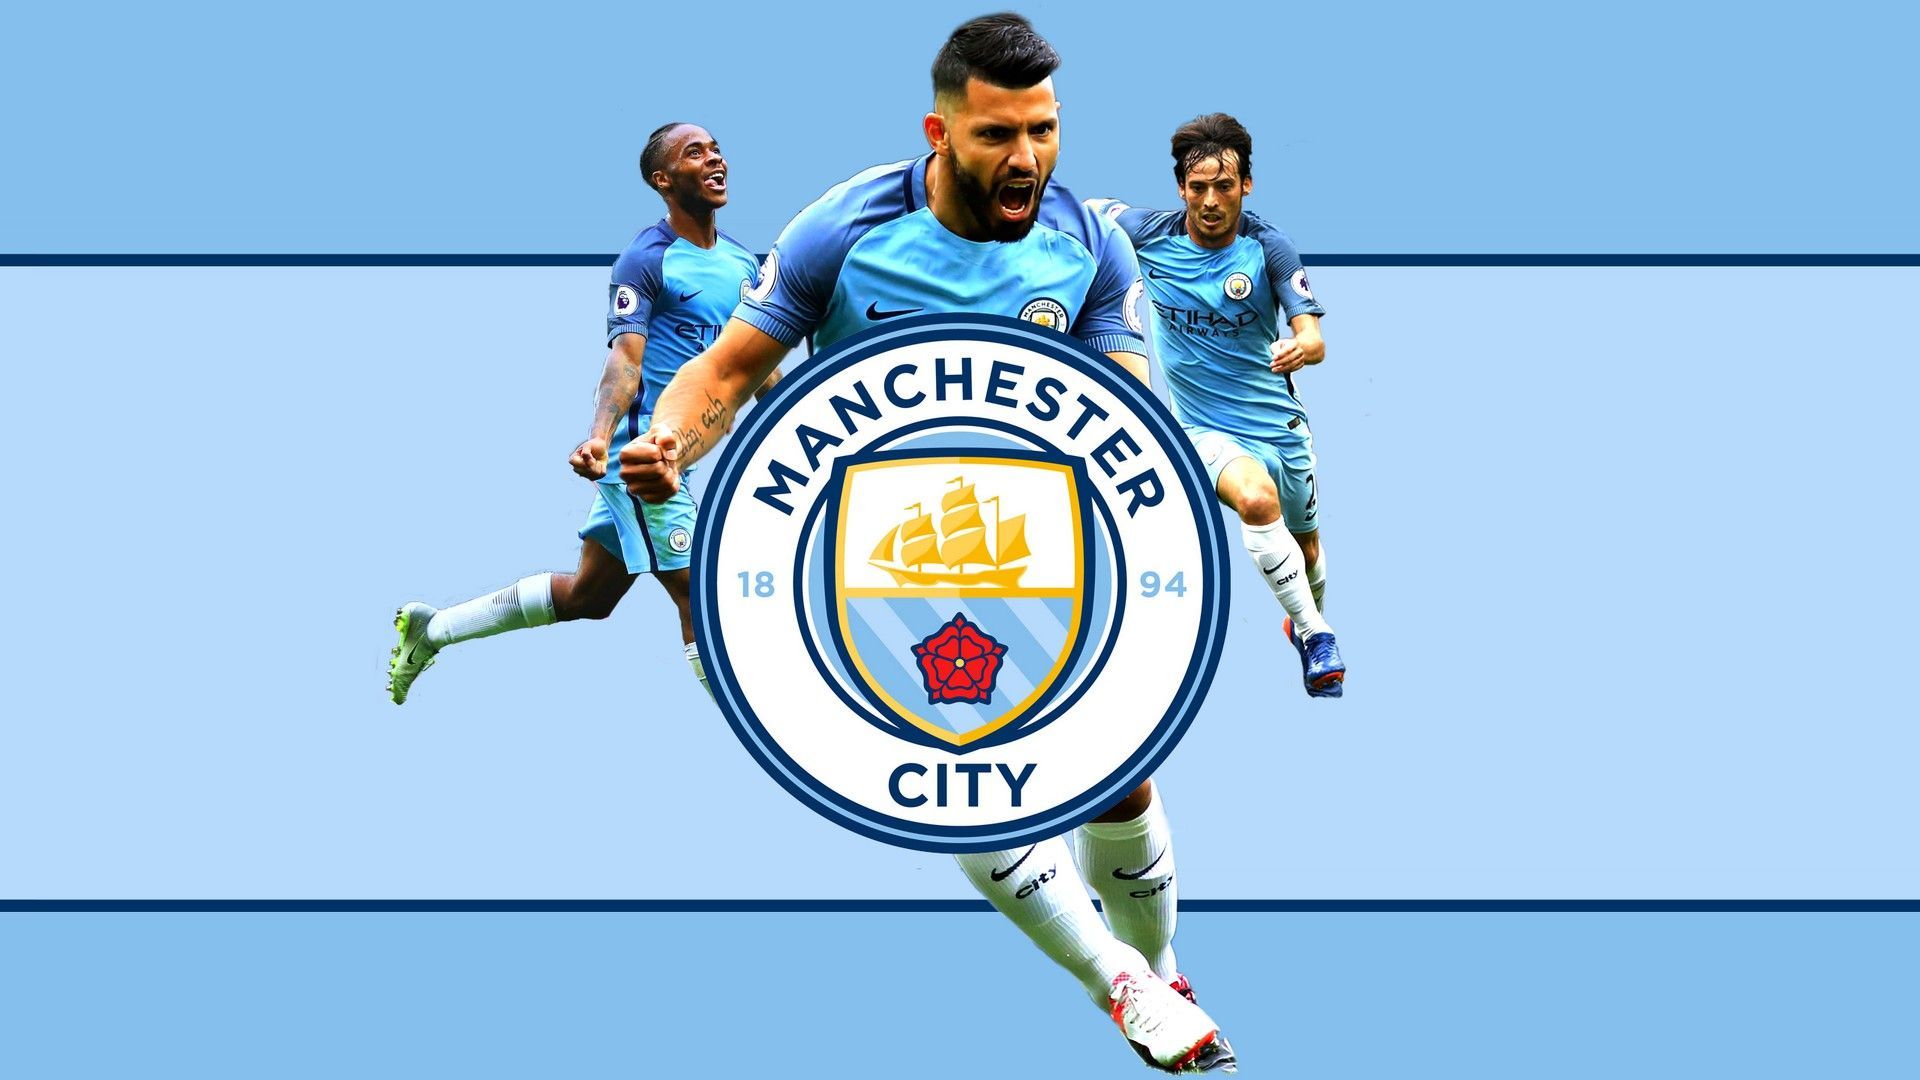 HD Manchester City Wallpaper. Best Football Wallpaper HD. Manchester city wallpaper, Manchester city logo, Manchester city